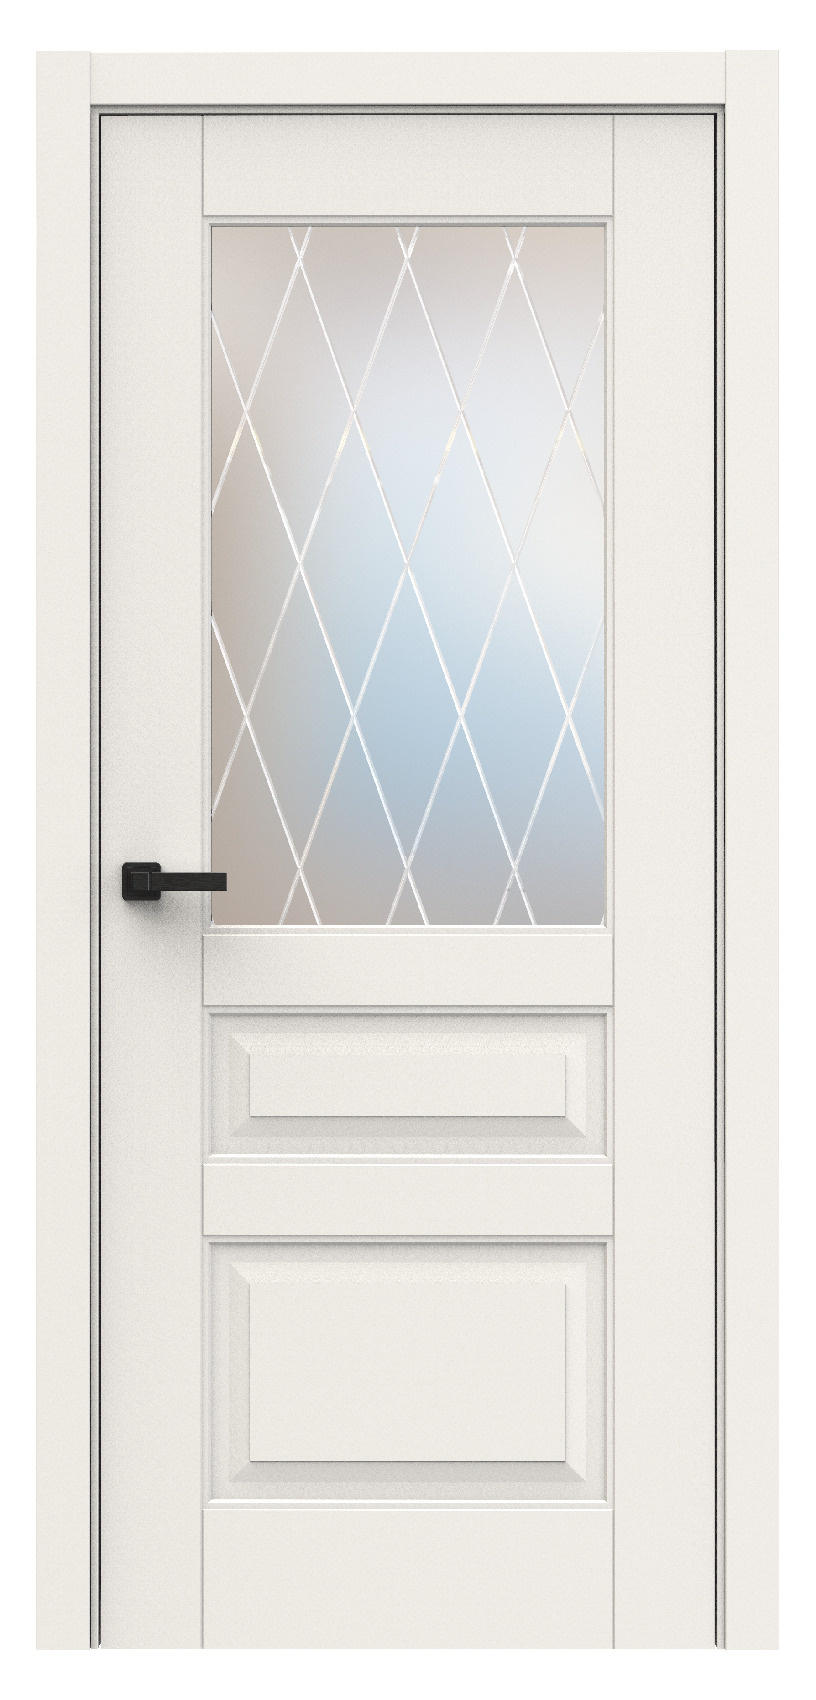 Questdoors Межкомнатная дверь QL4, арт. 18004 - фото №1